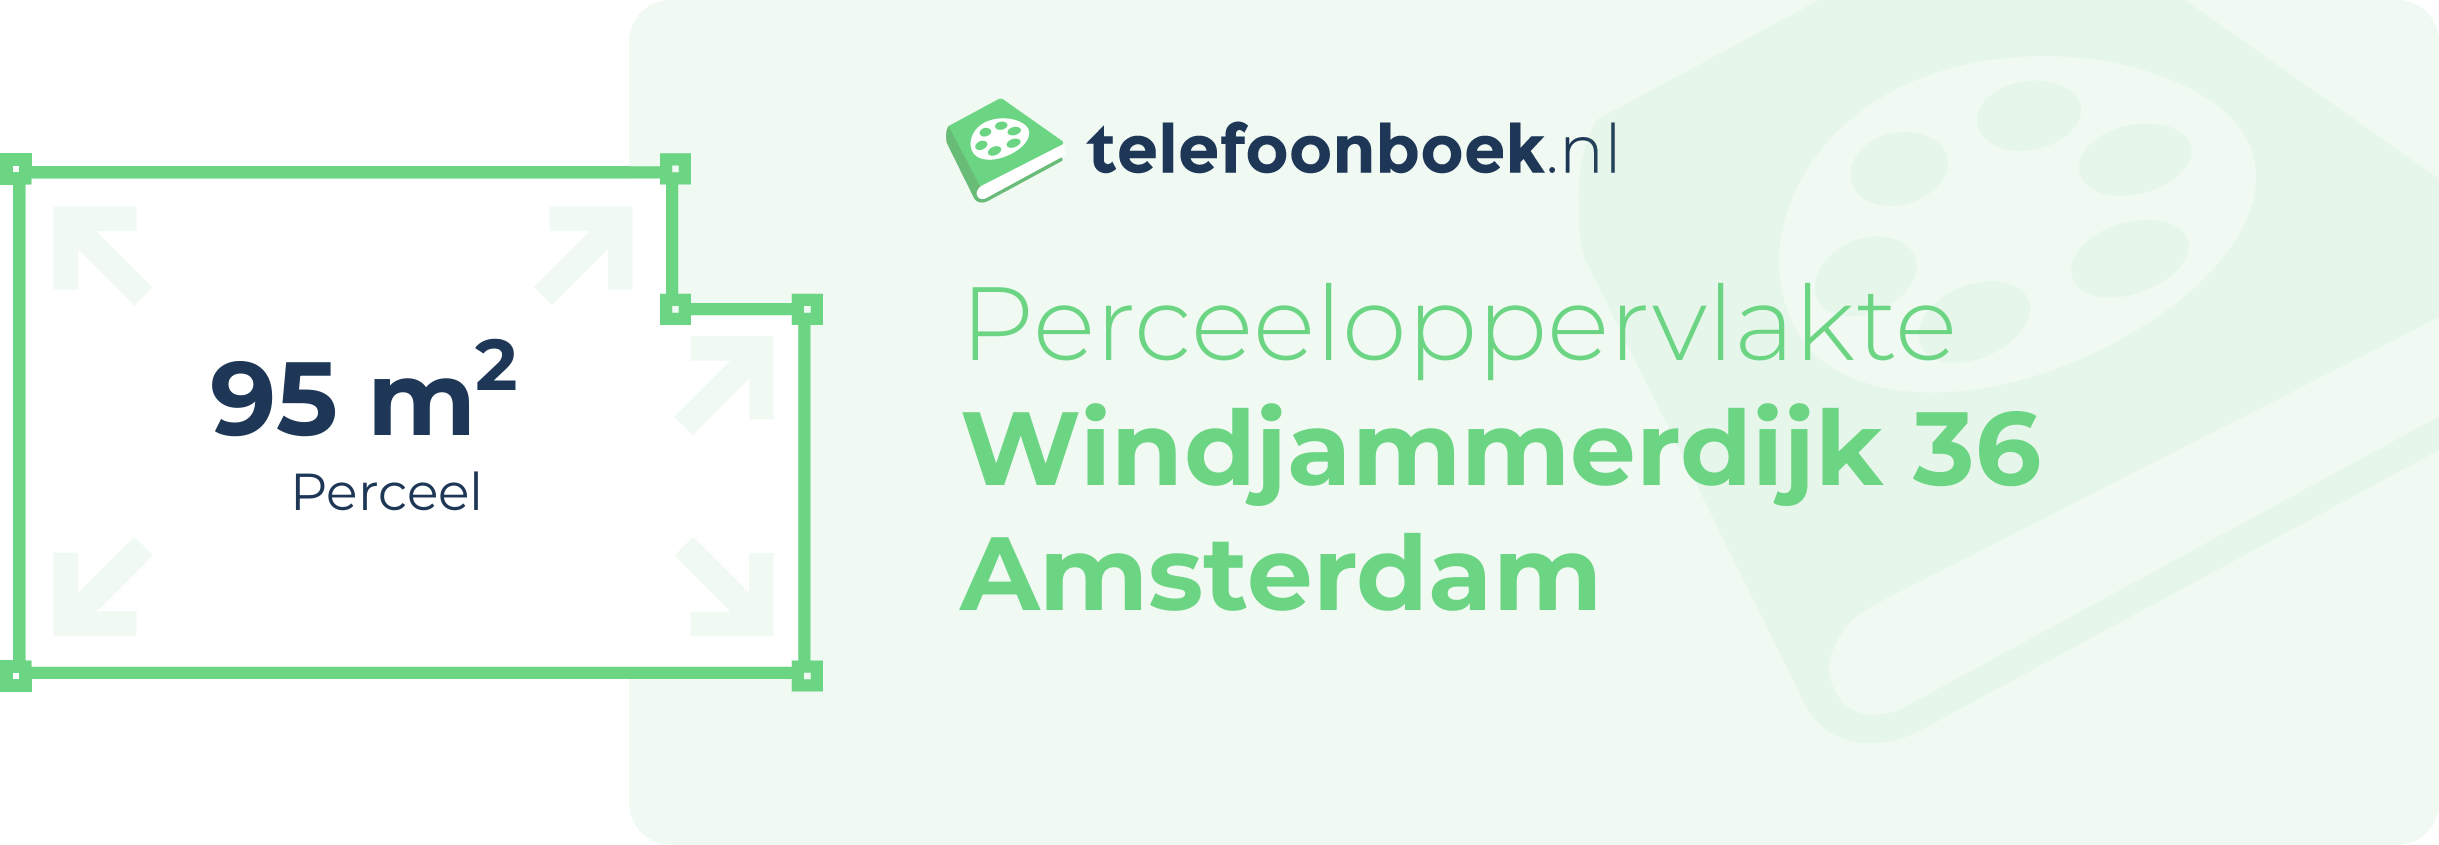 Perceeloppervlakte Windjammerdijk 36 Amsterdam